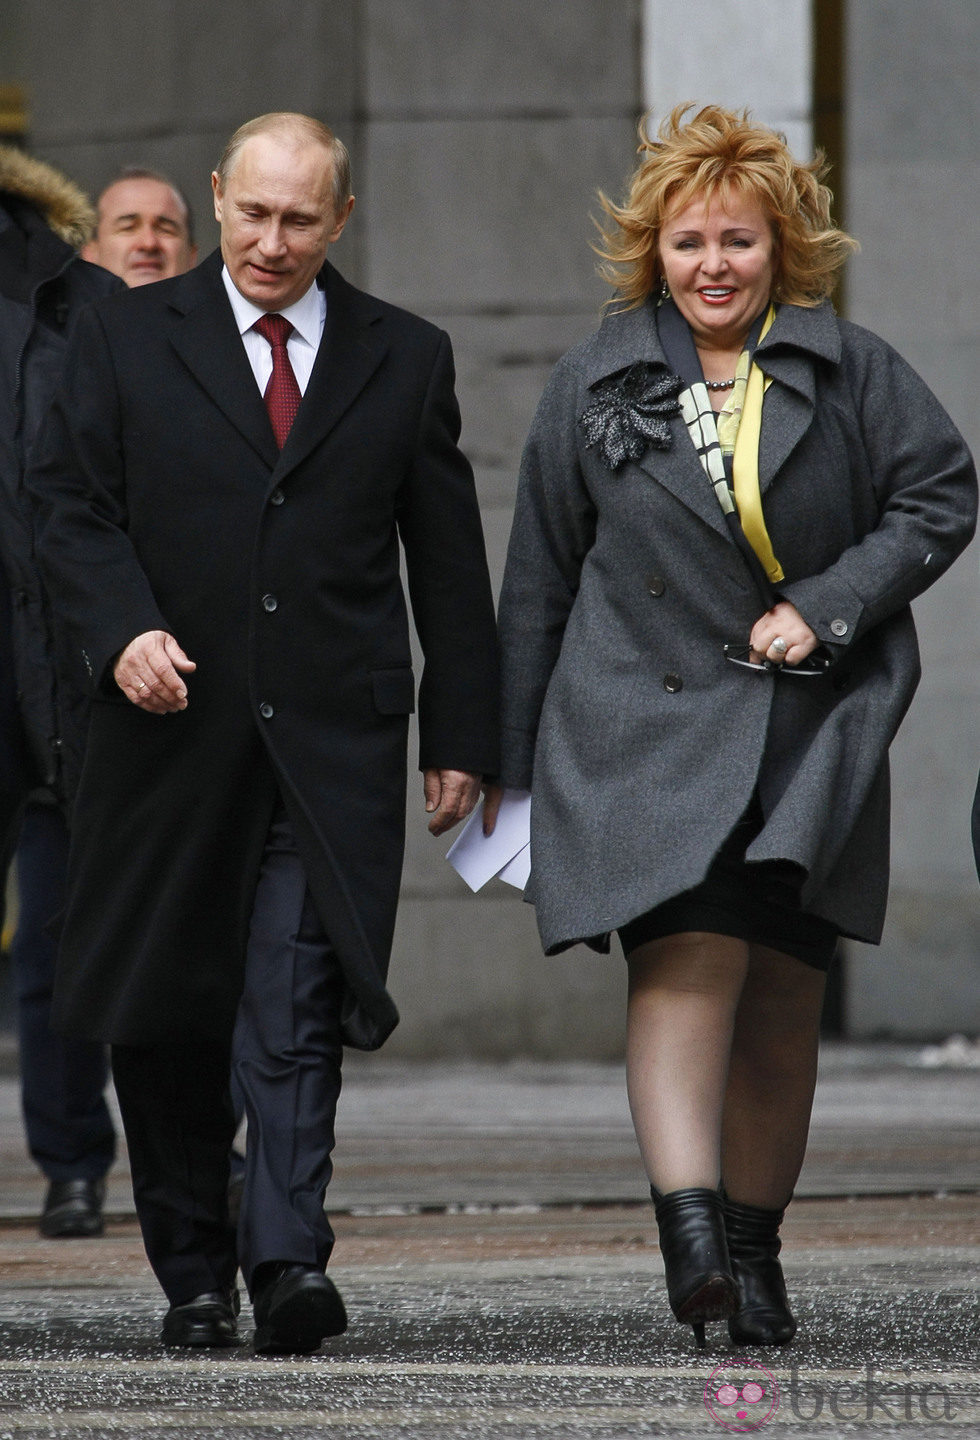 El presidente ruso Vladimir Putin con su exmujer Lyudmila